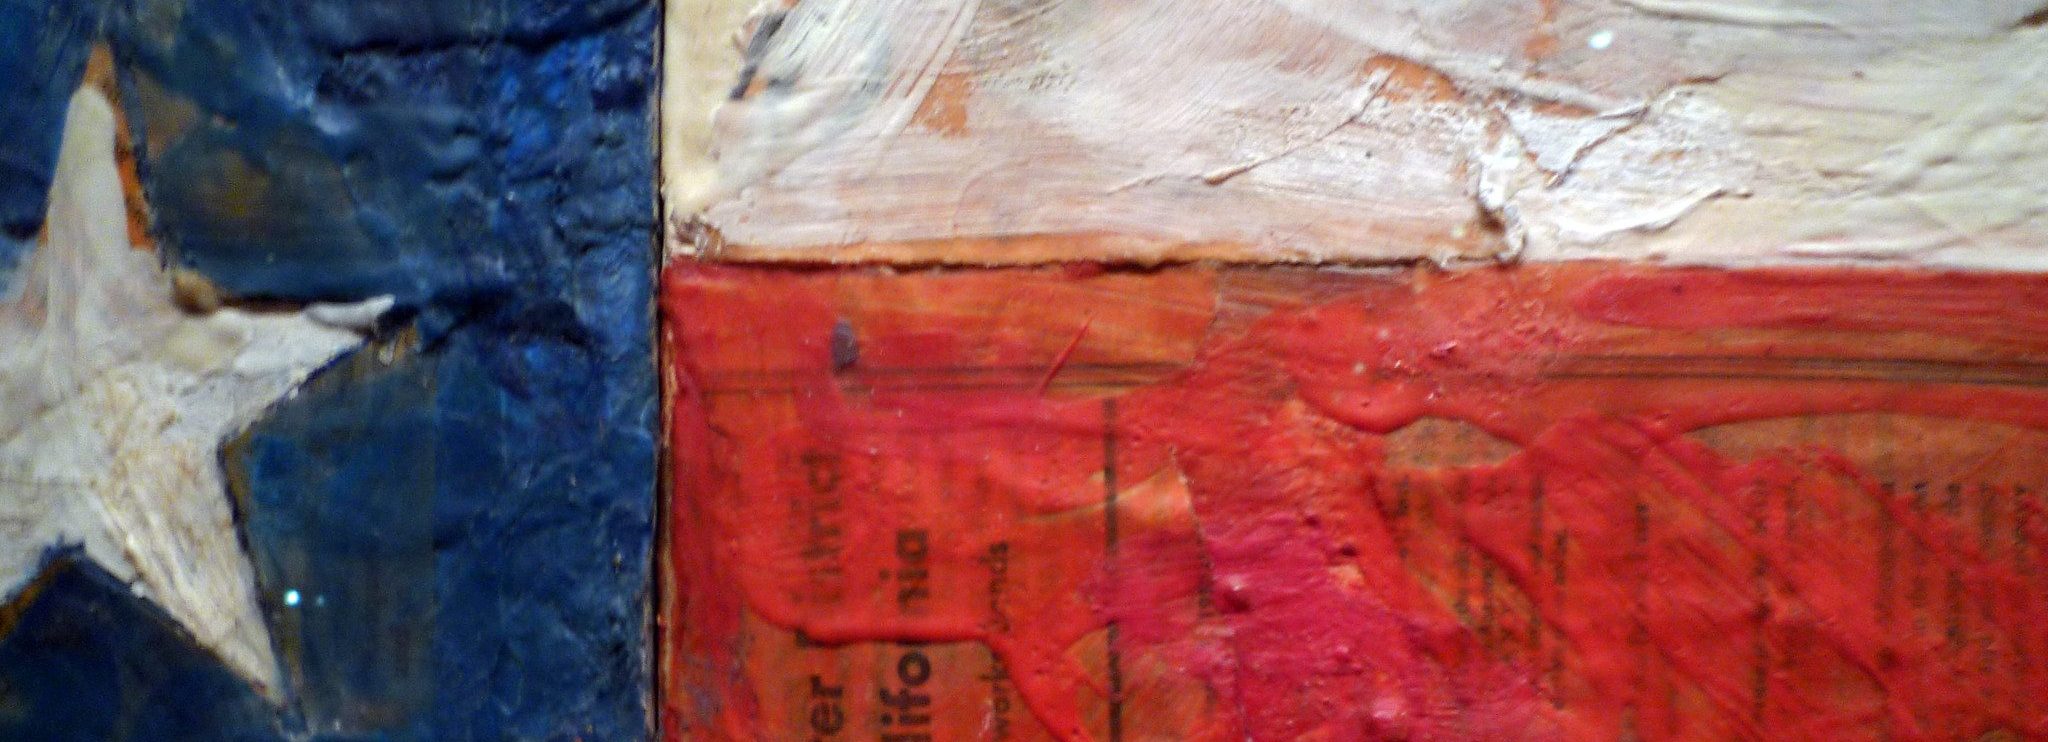 Jasper Johns, Flag (detail), 1954-55 (MoMA)